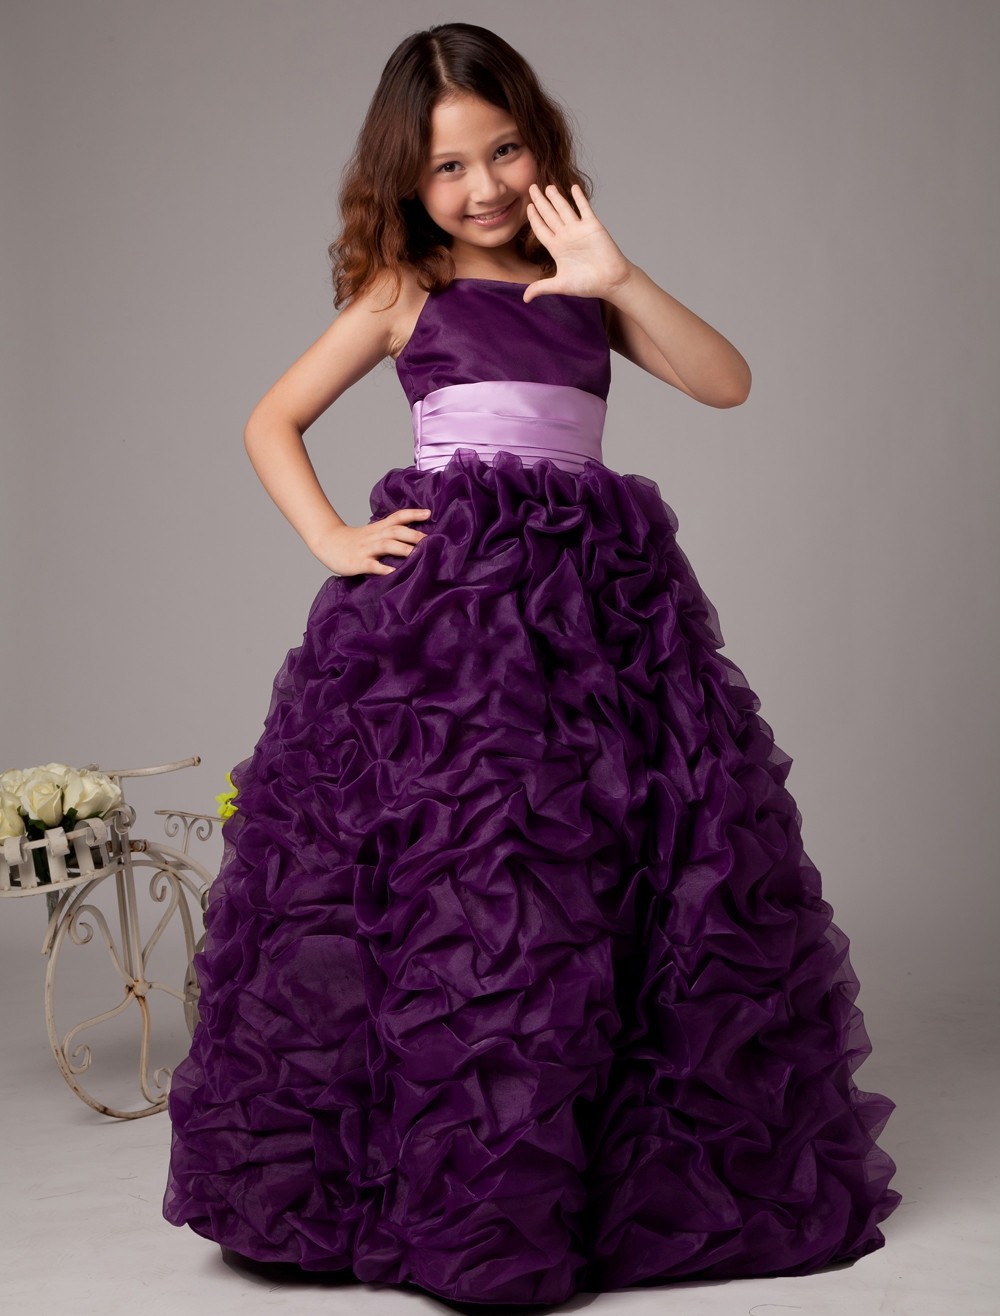 purple bridesmaid dresses kids